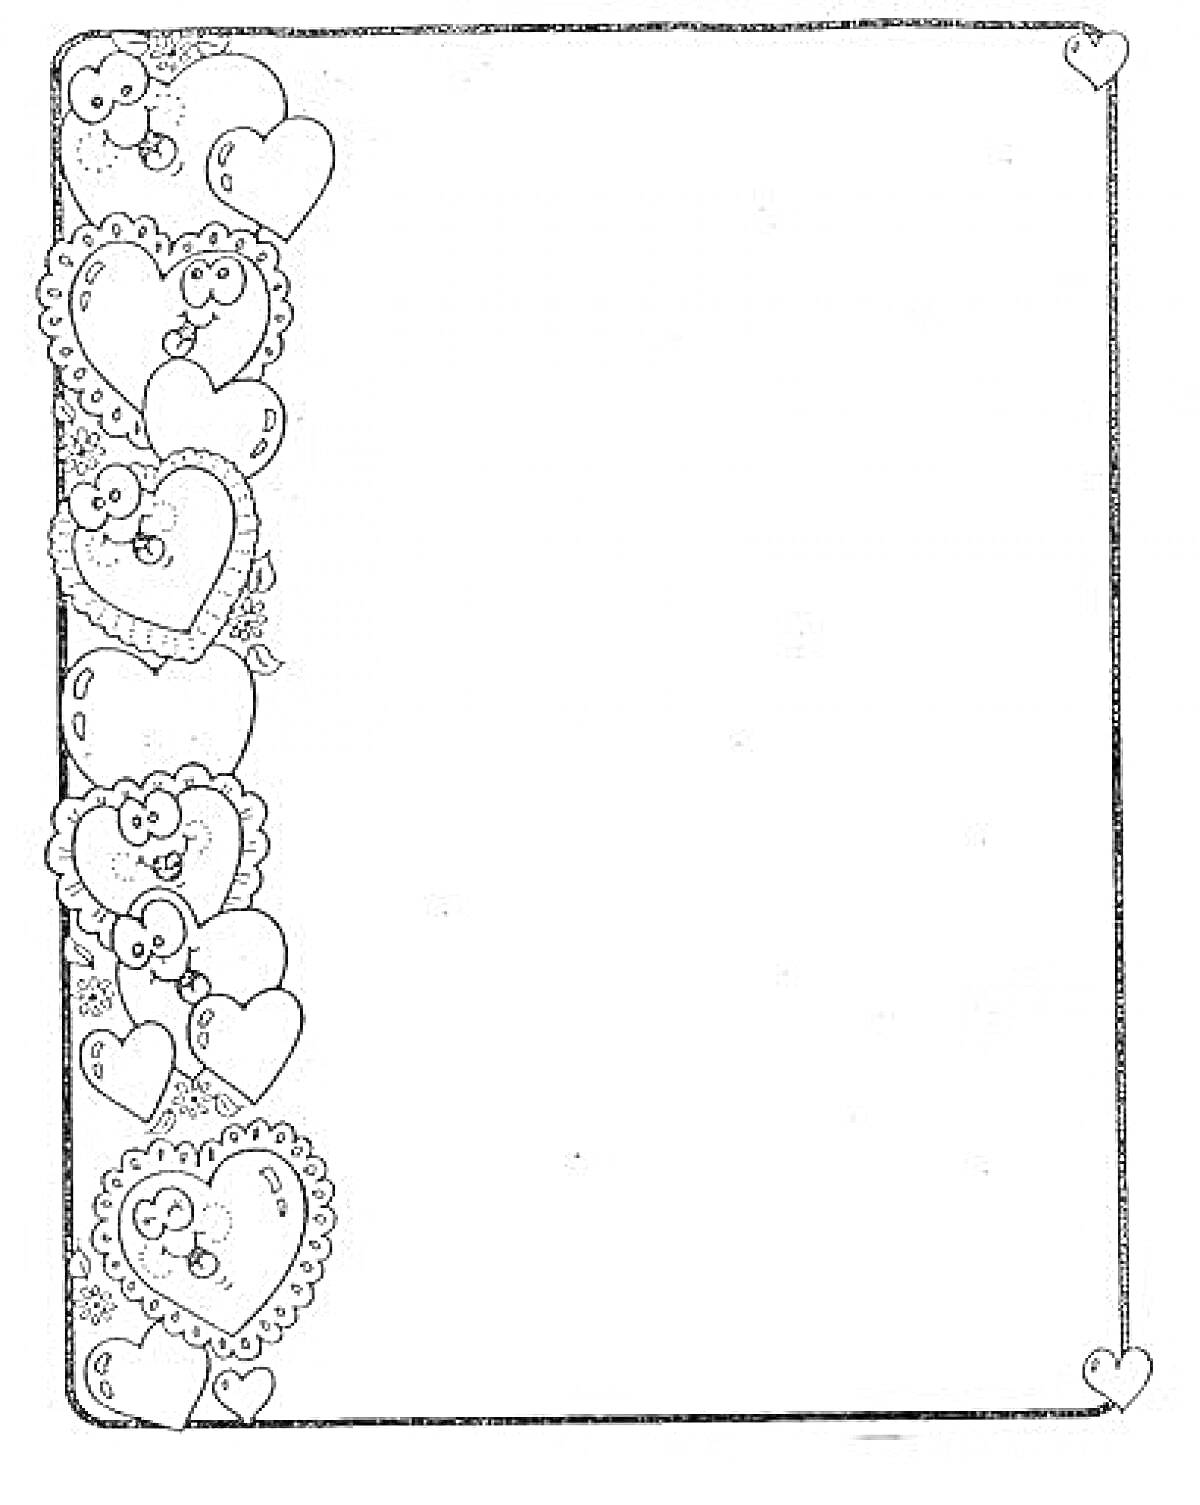 Раскраска титульный лист с узорами в виде сердечек по левой стороне и в углах